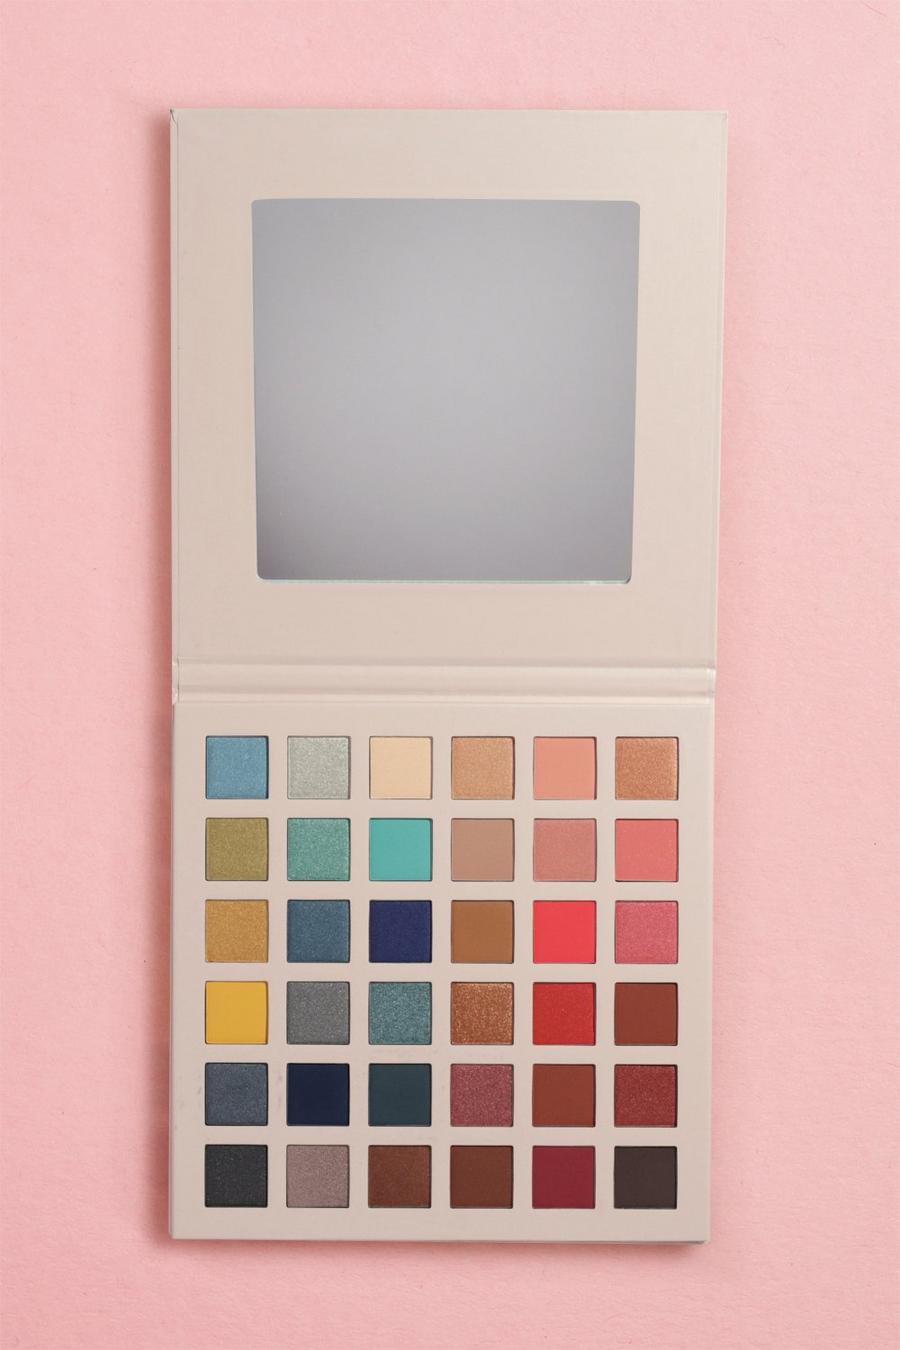 Boohoo Beauty 'The Ultimate' Lidschatten-Palette 36 Farben, Multi